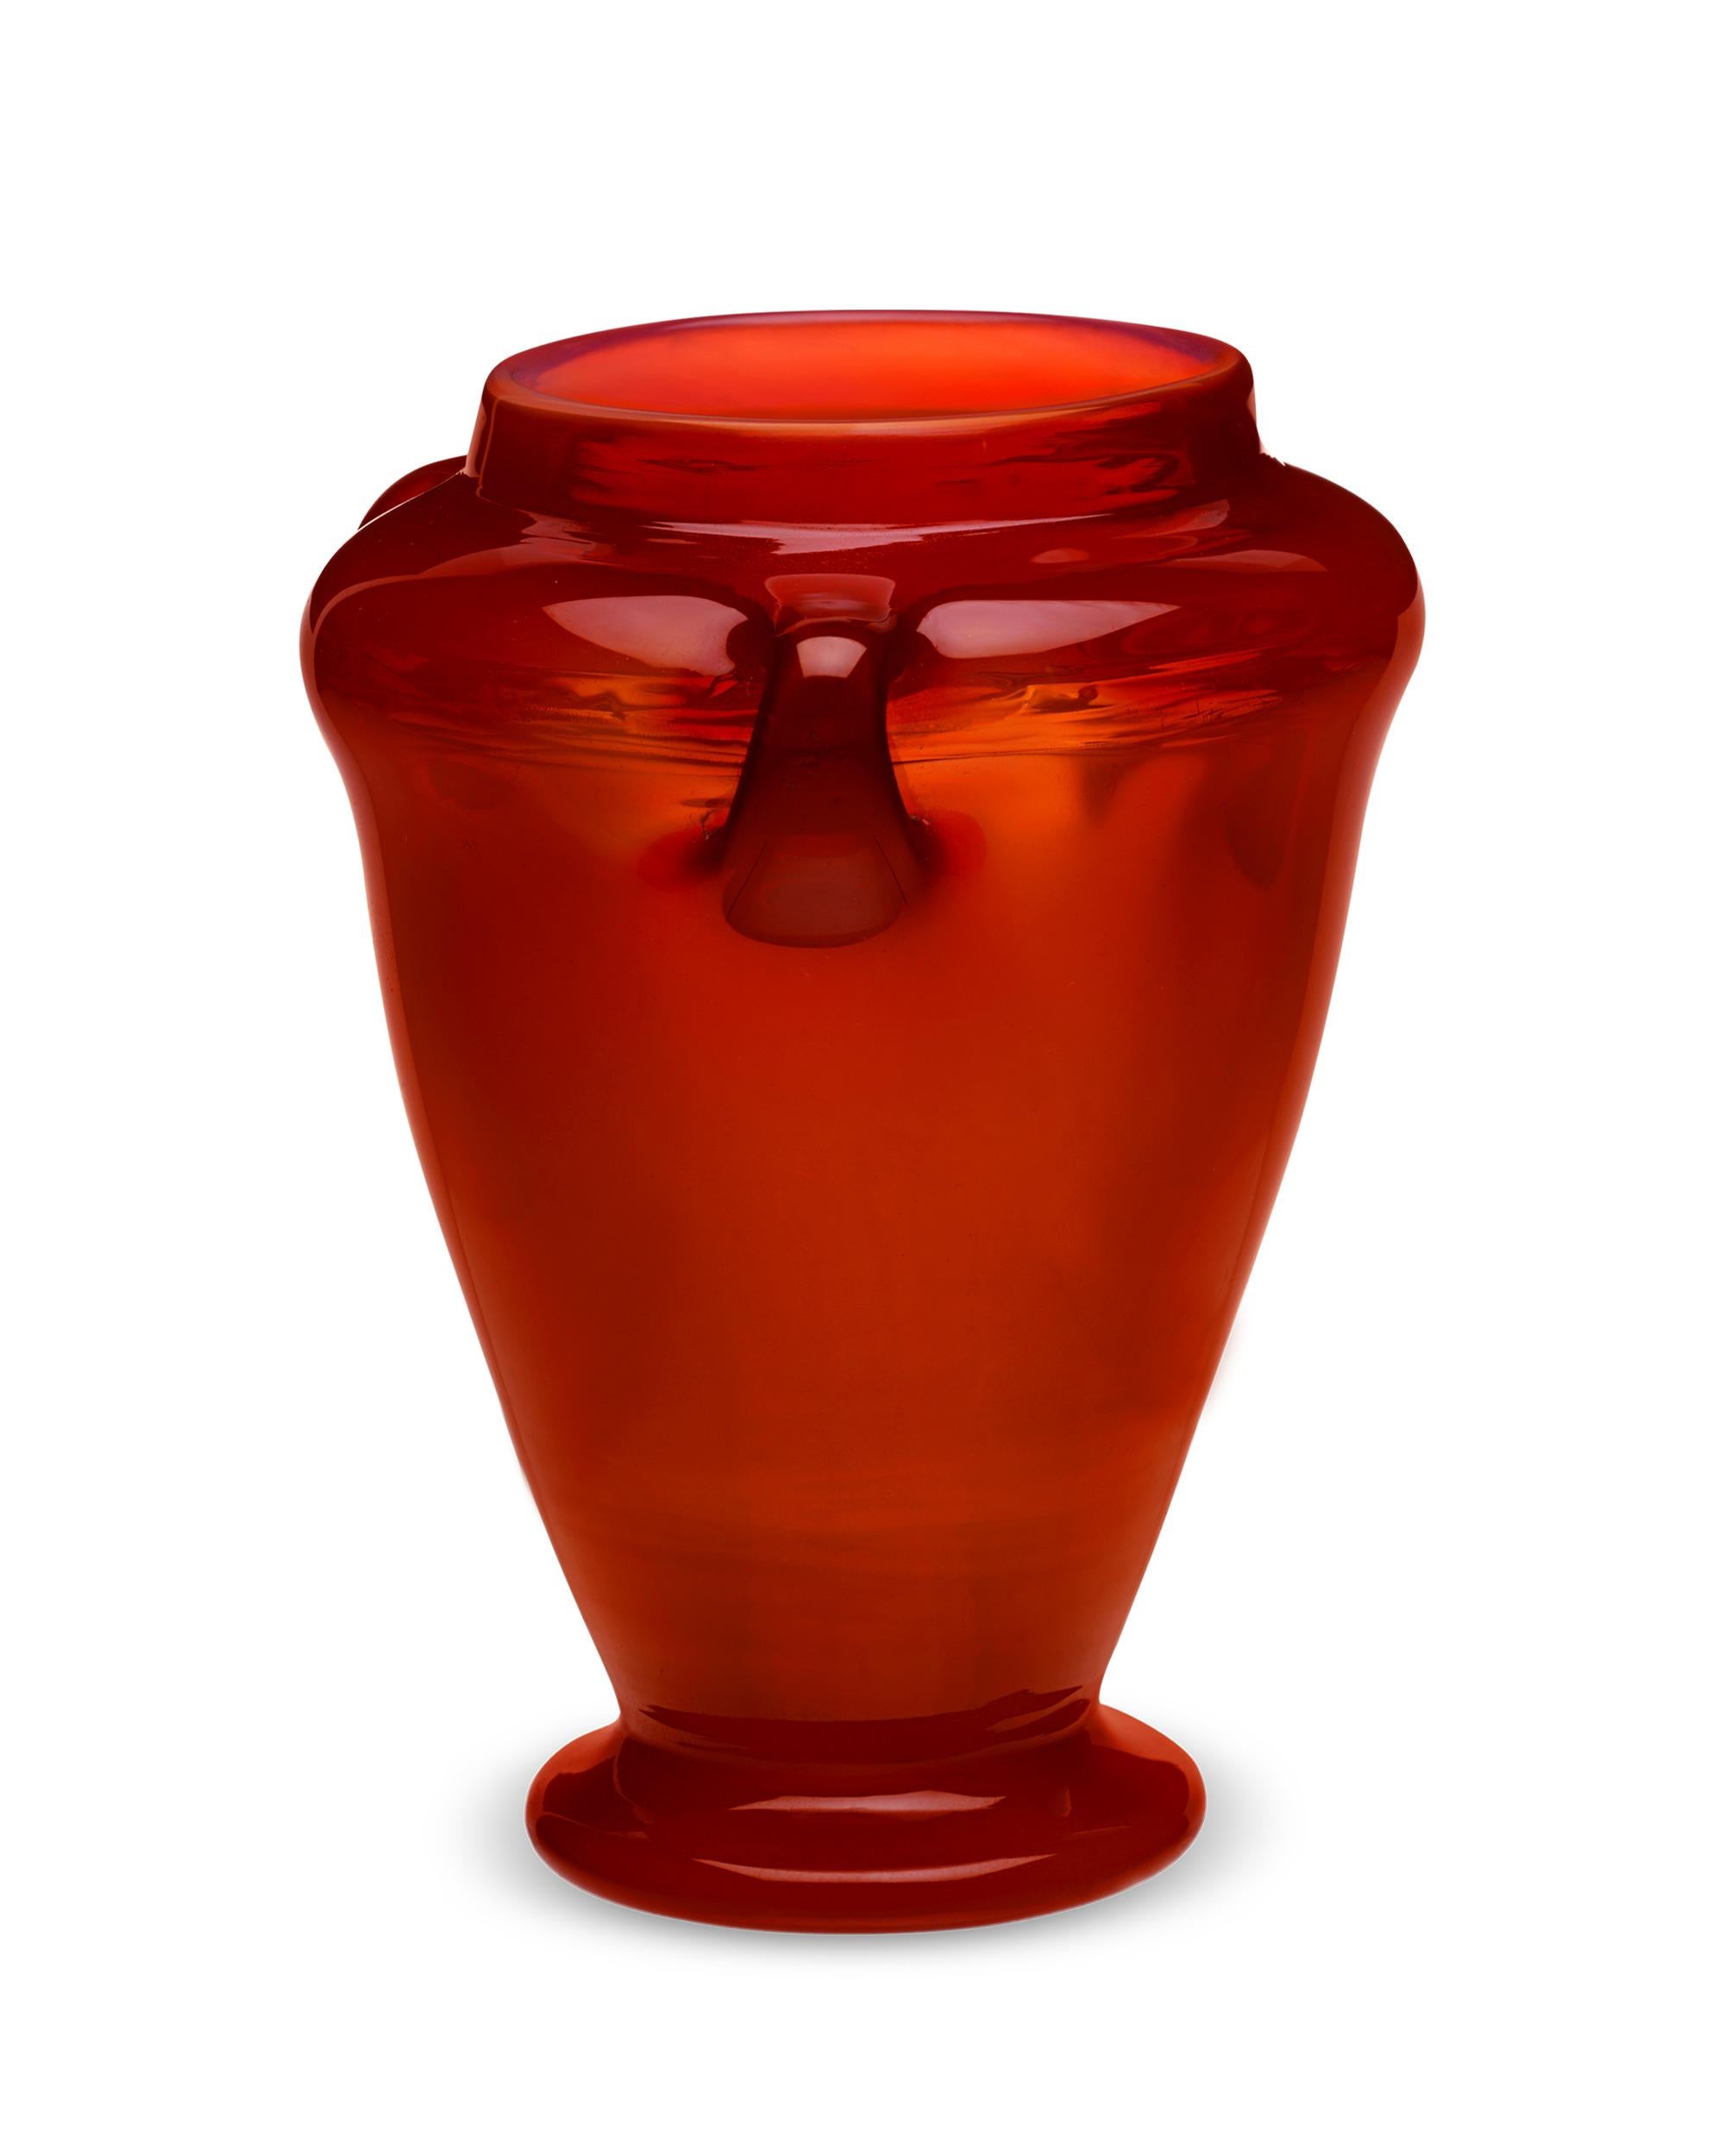 Fabriqué dans un verre rouge profond et vibrant, ce vase Favrile luminescent a été réalisé par les légendaires Tiffany Studios. De toutes les teintes du verre Favrile, le rouge est la plus insaisissable et la plus difficile à trouver en raison de